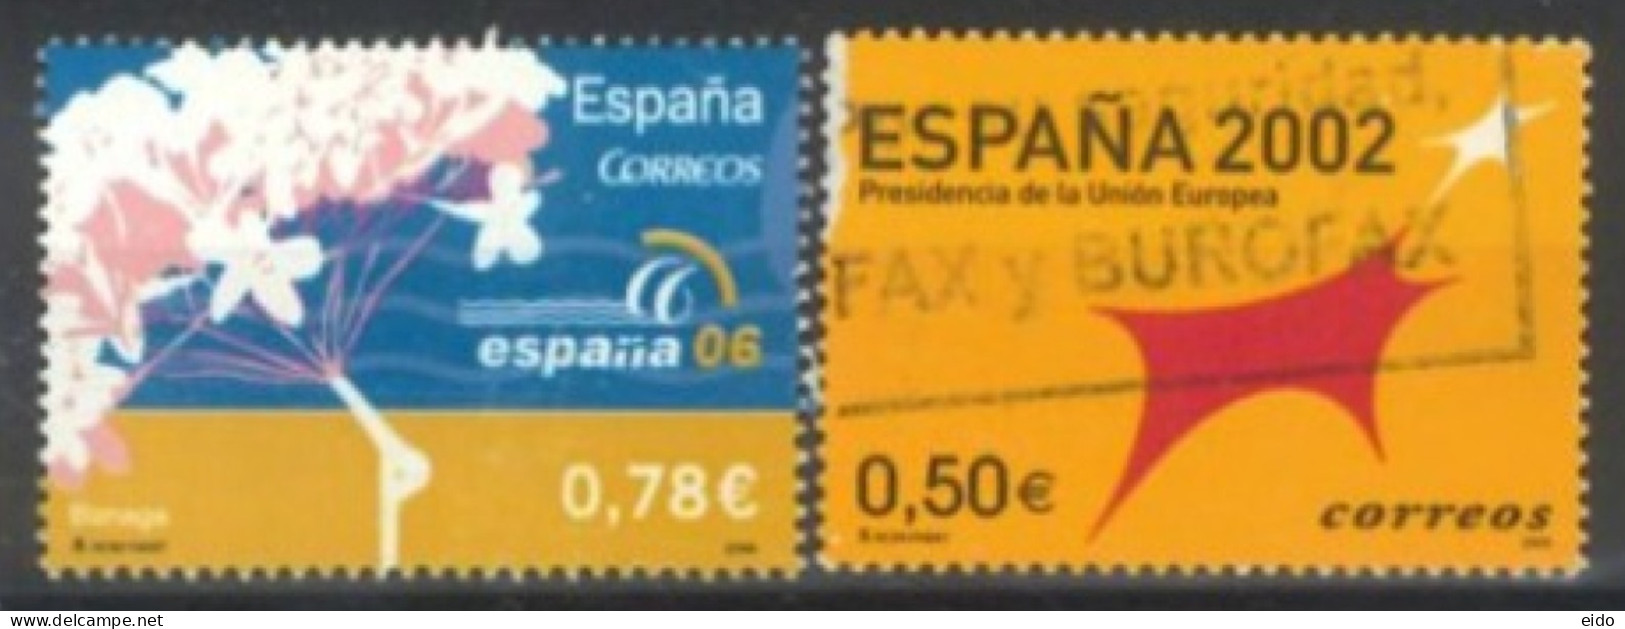 SPAIN, 2002/2006, ESPANA 2006 & 2002 STAMPS SET OF 2, USED. - Oblitérés